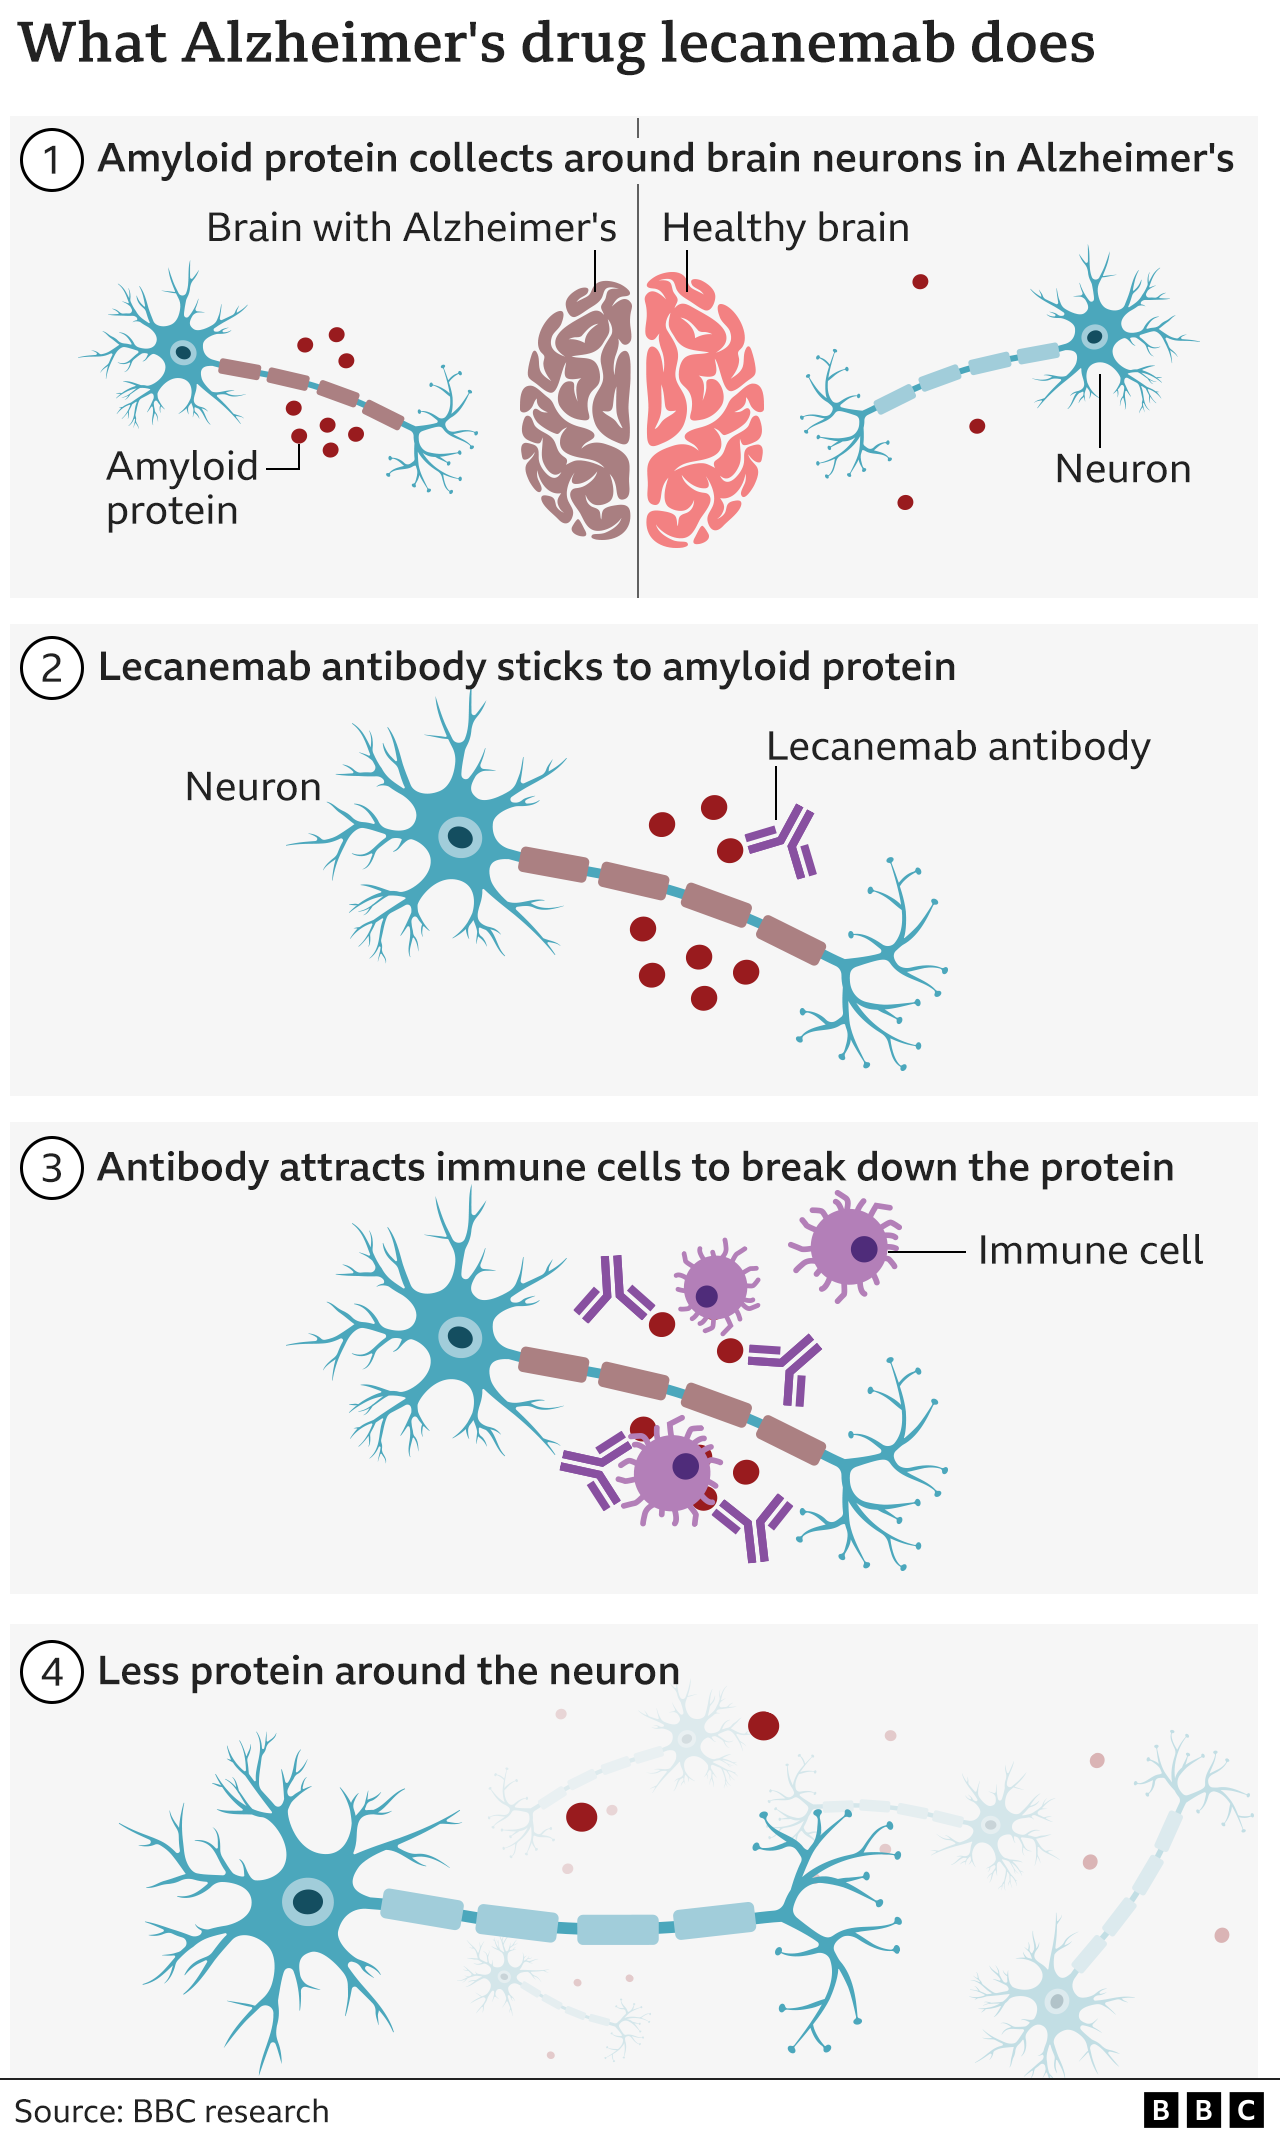 Графика, показывающая, что делает антитело к леканемабу — прикрепляется к амелоидным белкам, которых больше в мозге, пораженном болезнью Альцгеймера, чем в здоровом мозге, а затем привлекает иммунные клетки организма, которые расщепляют белок